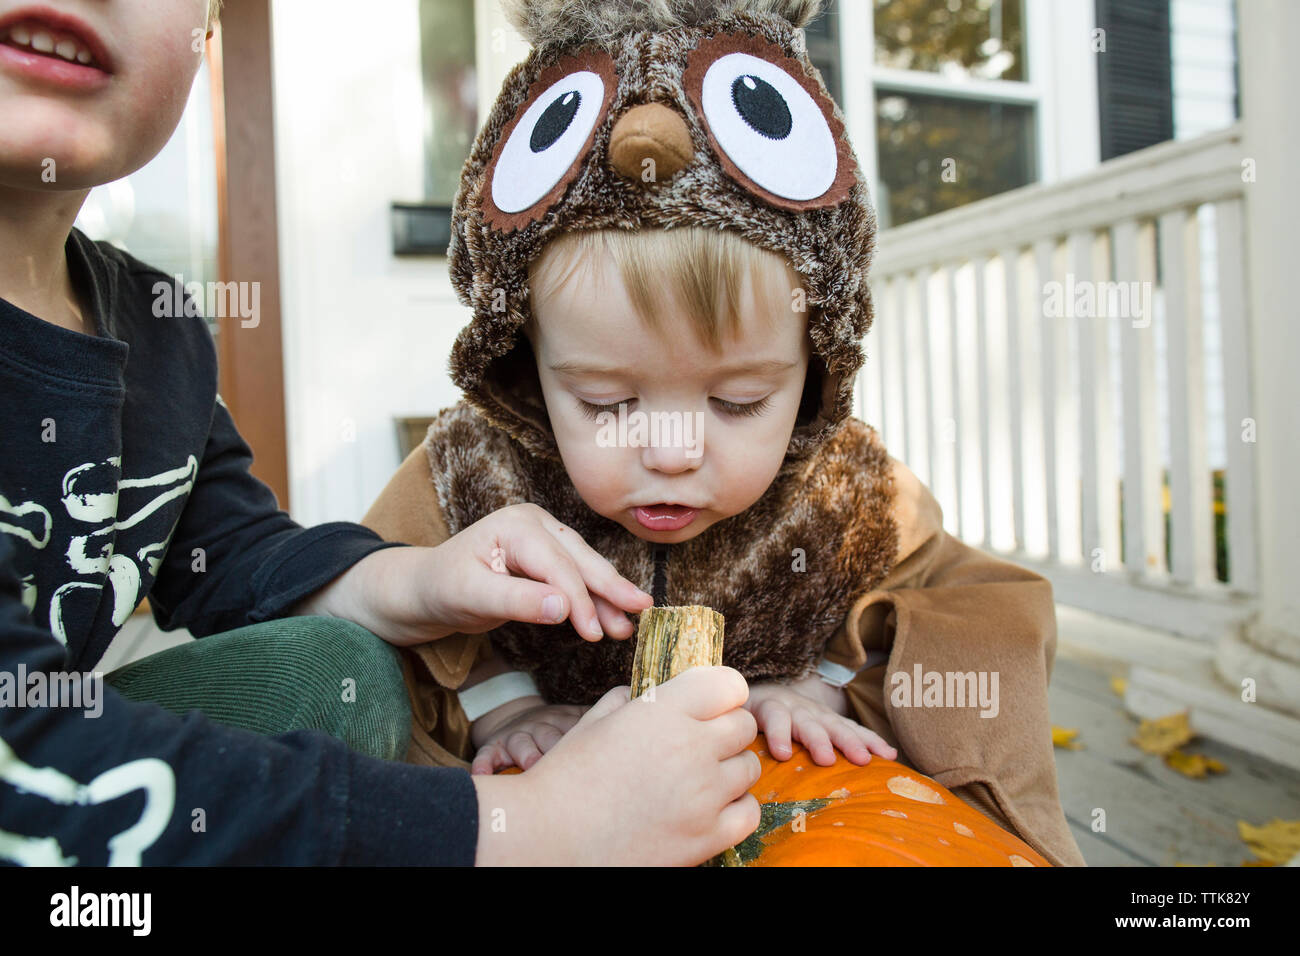 Niño niño vestido como un búho estrechamente inspecciona calabaza de Halloween Foto de stock